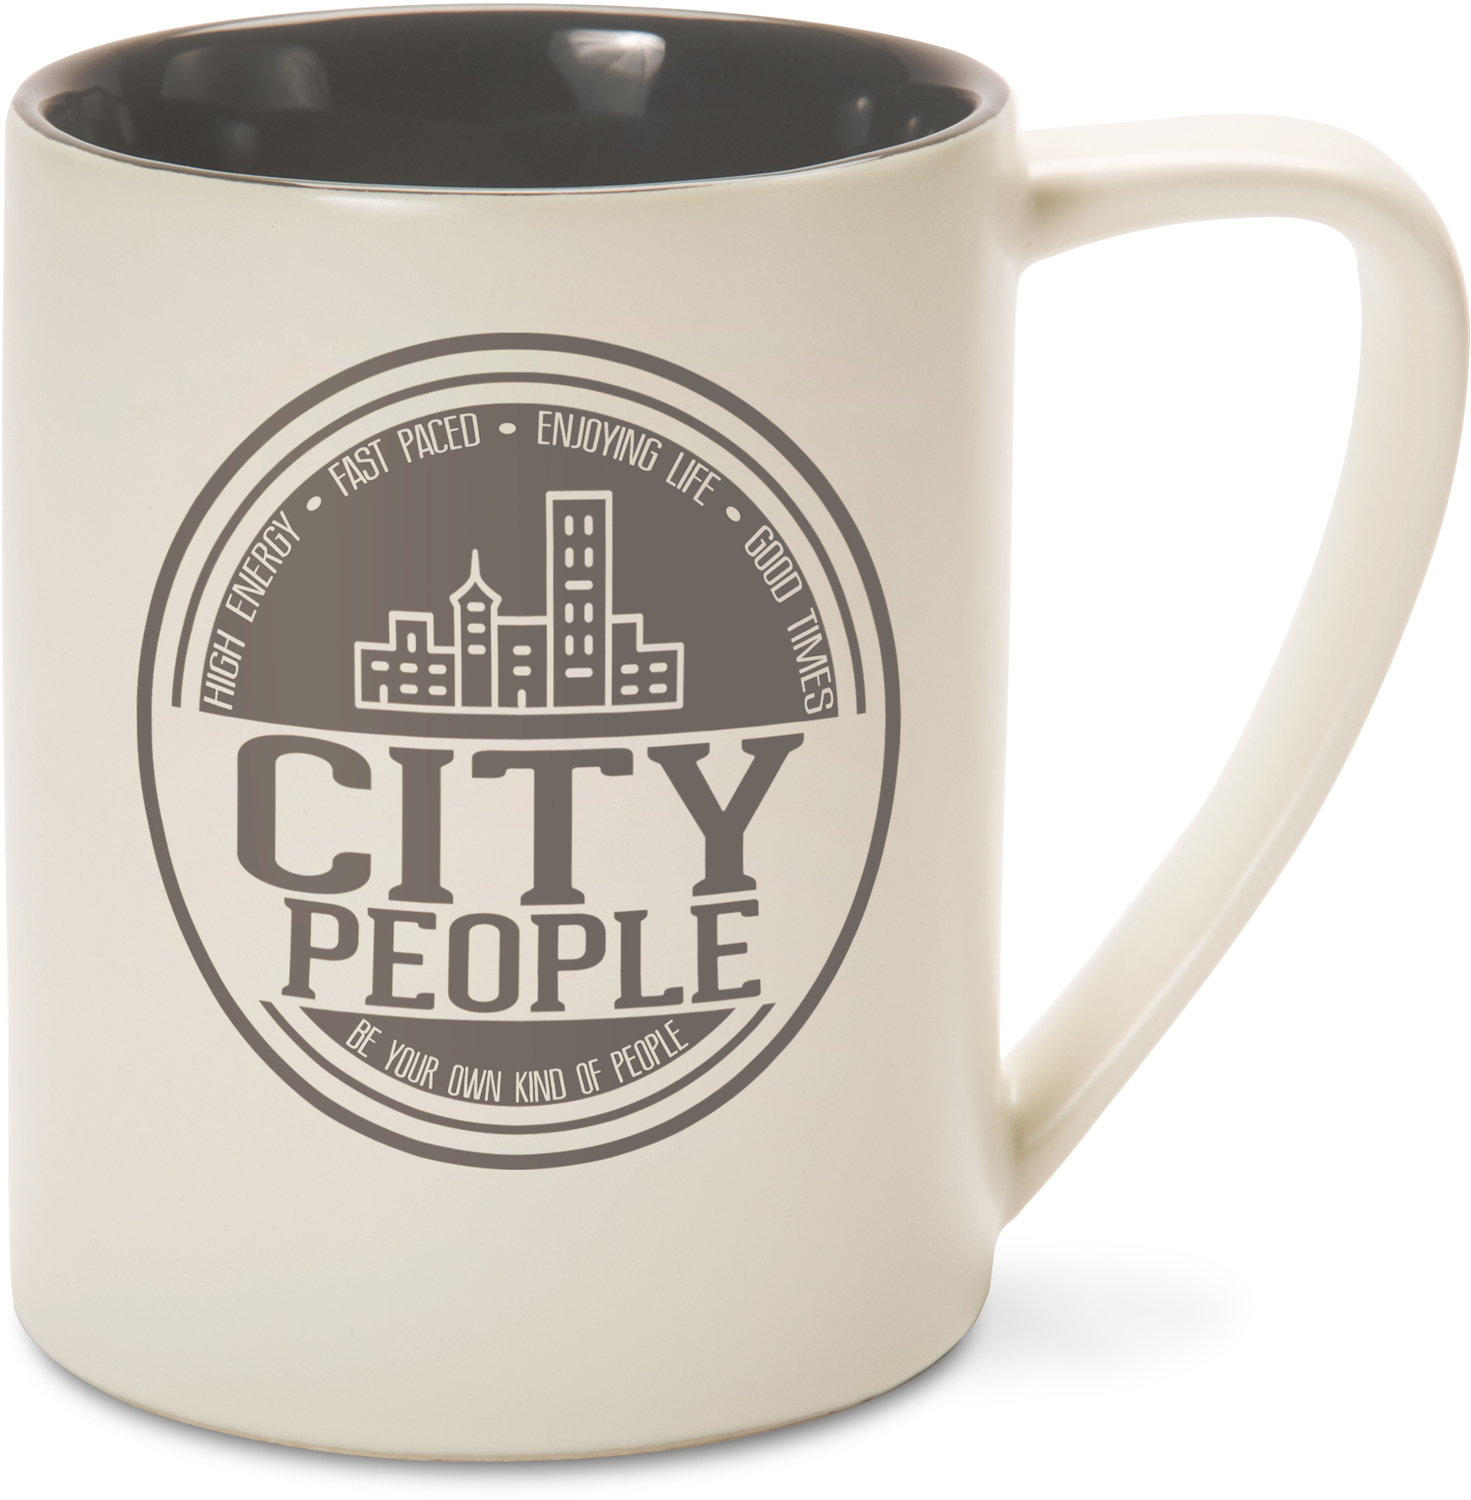 City People by We People - City People - 18 oz Mug